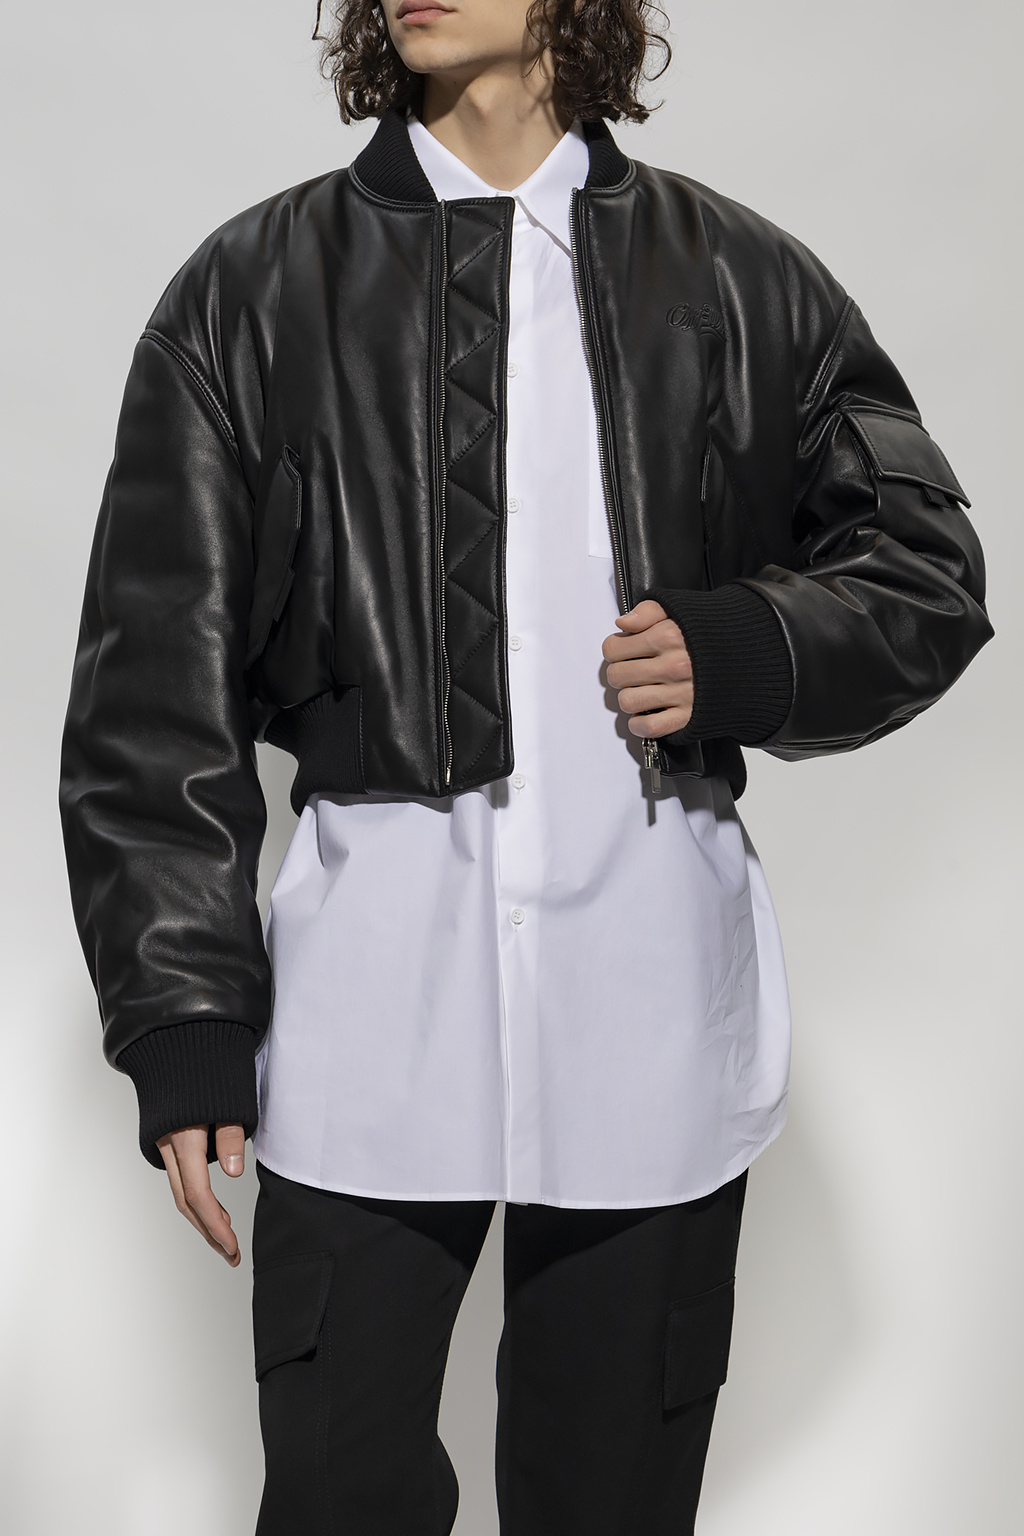 IetpShops Spain - White - Gradient Dot T-Shirt Hombre - Black Leather  jacket Off